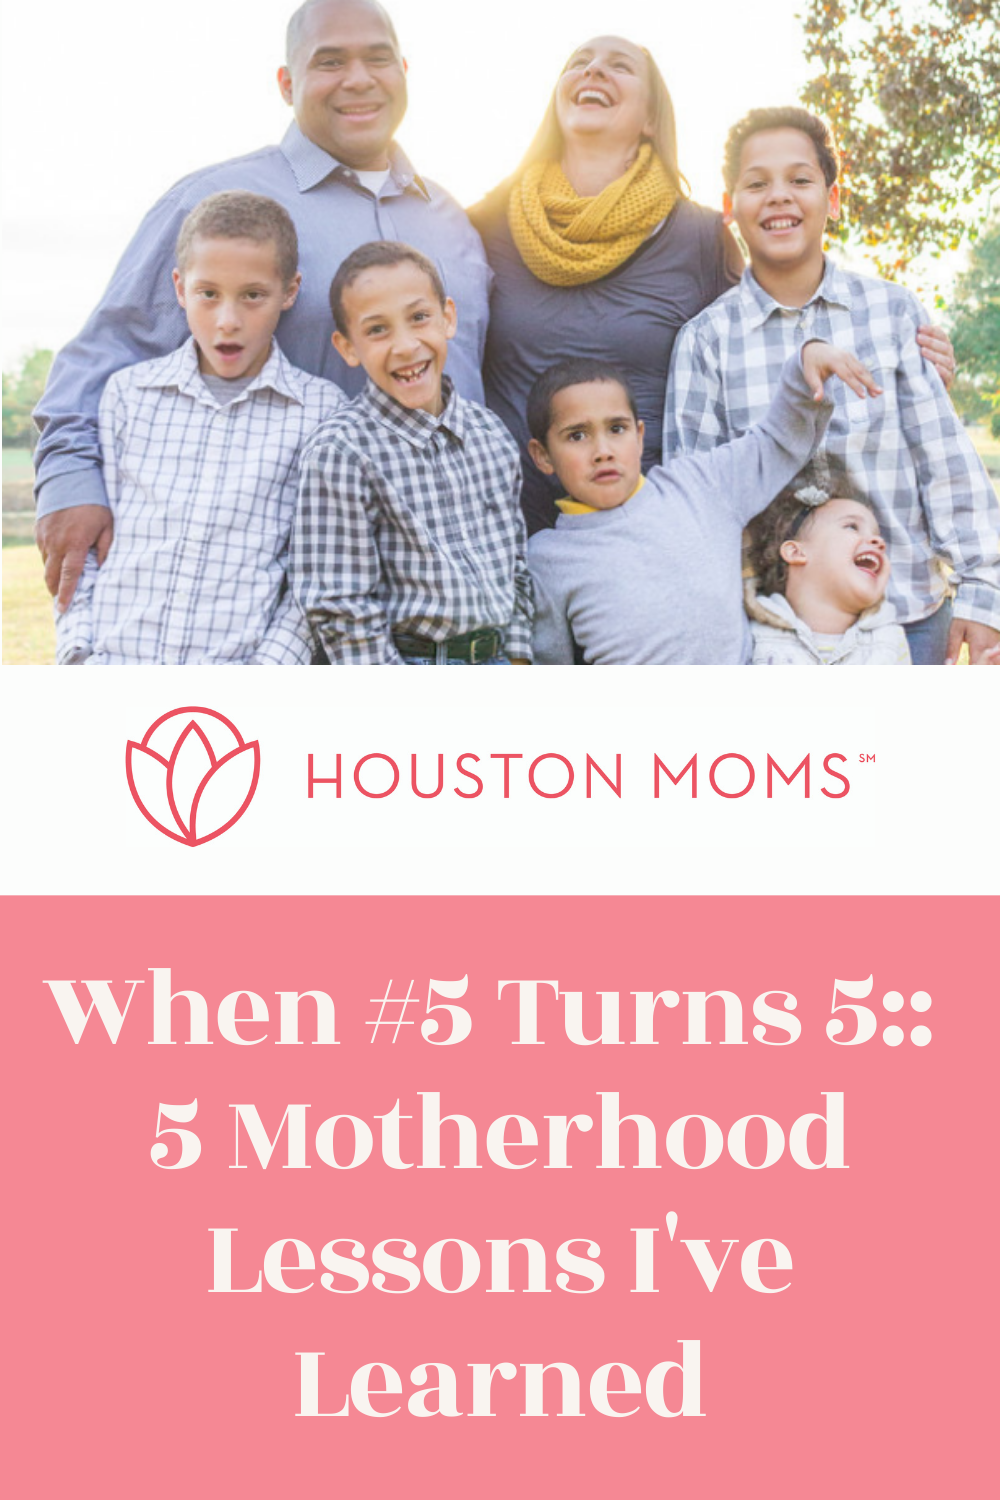 Houston Moms "When #5 Turns 5:: 5 Motherhood Lessons I've Learned" #houstonmoms #houstonmomsblog #momsaroundhouston